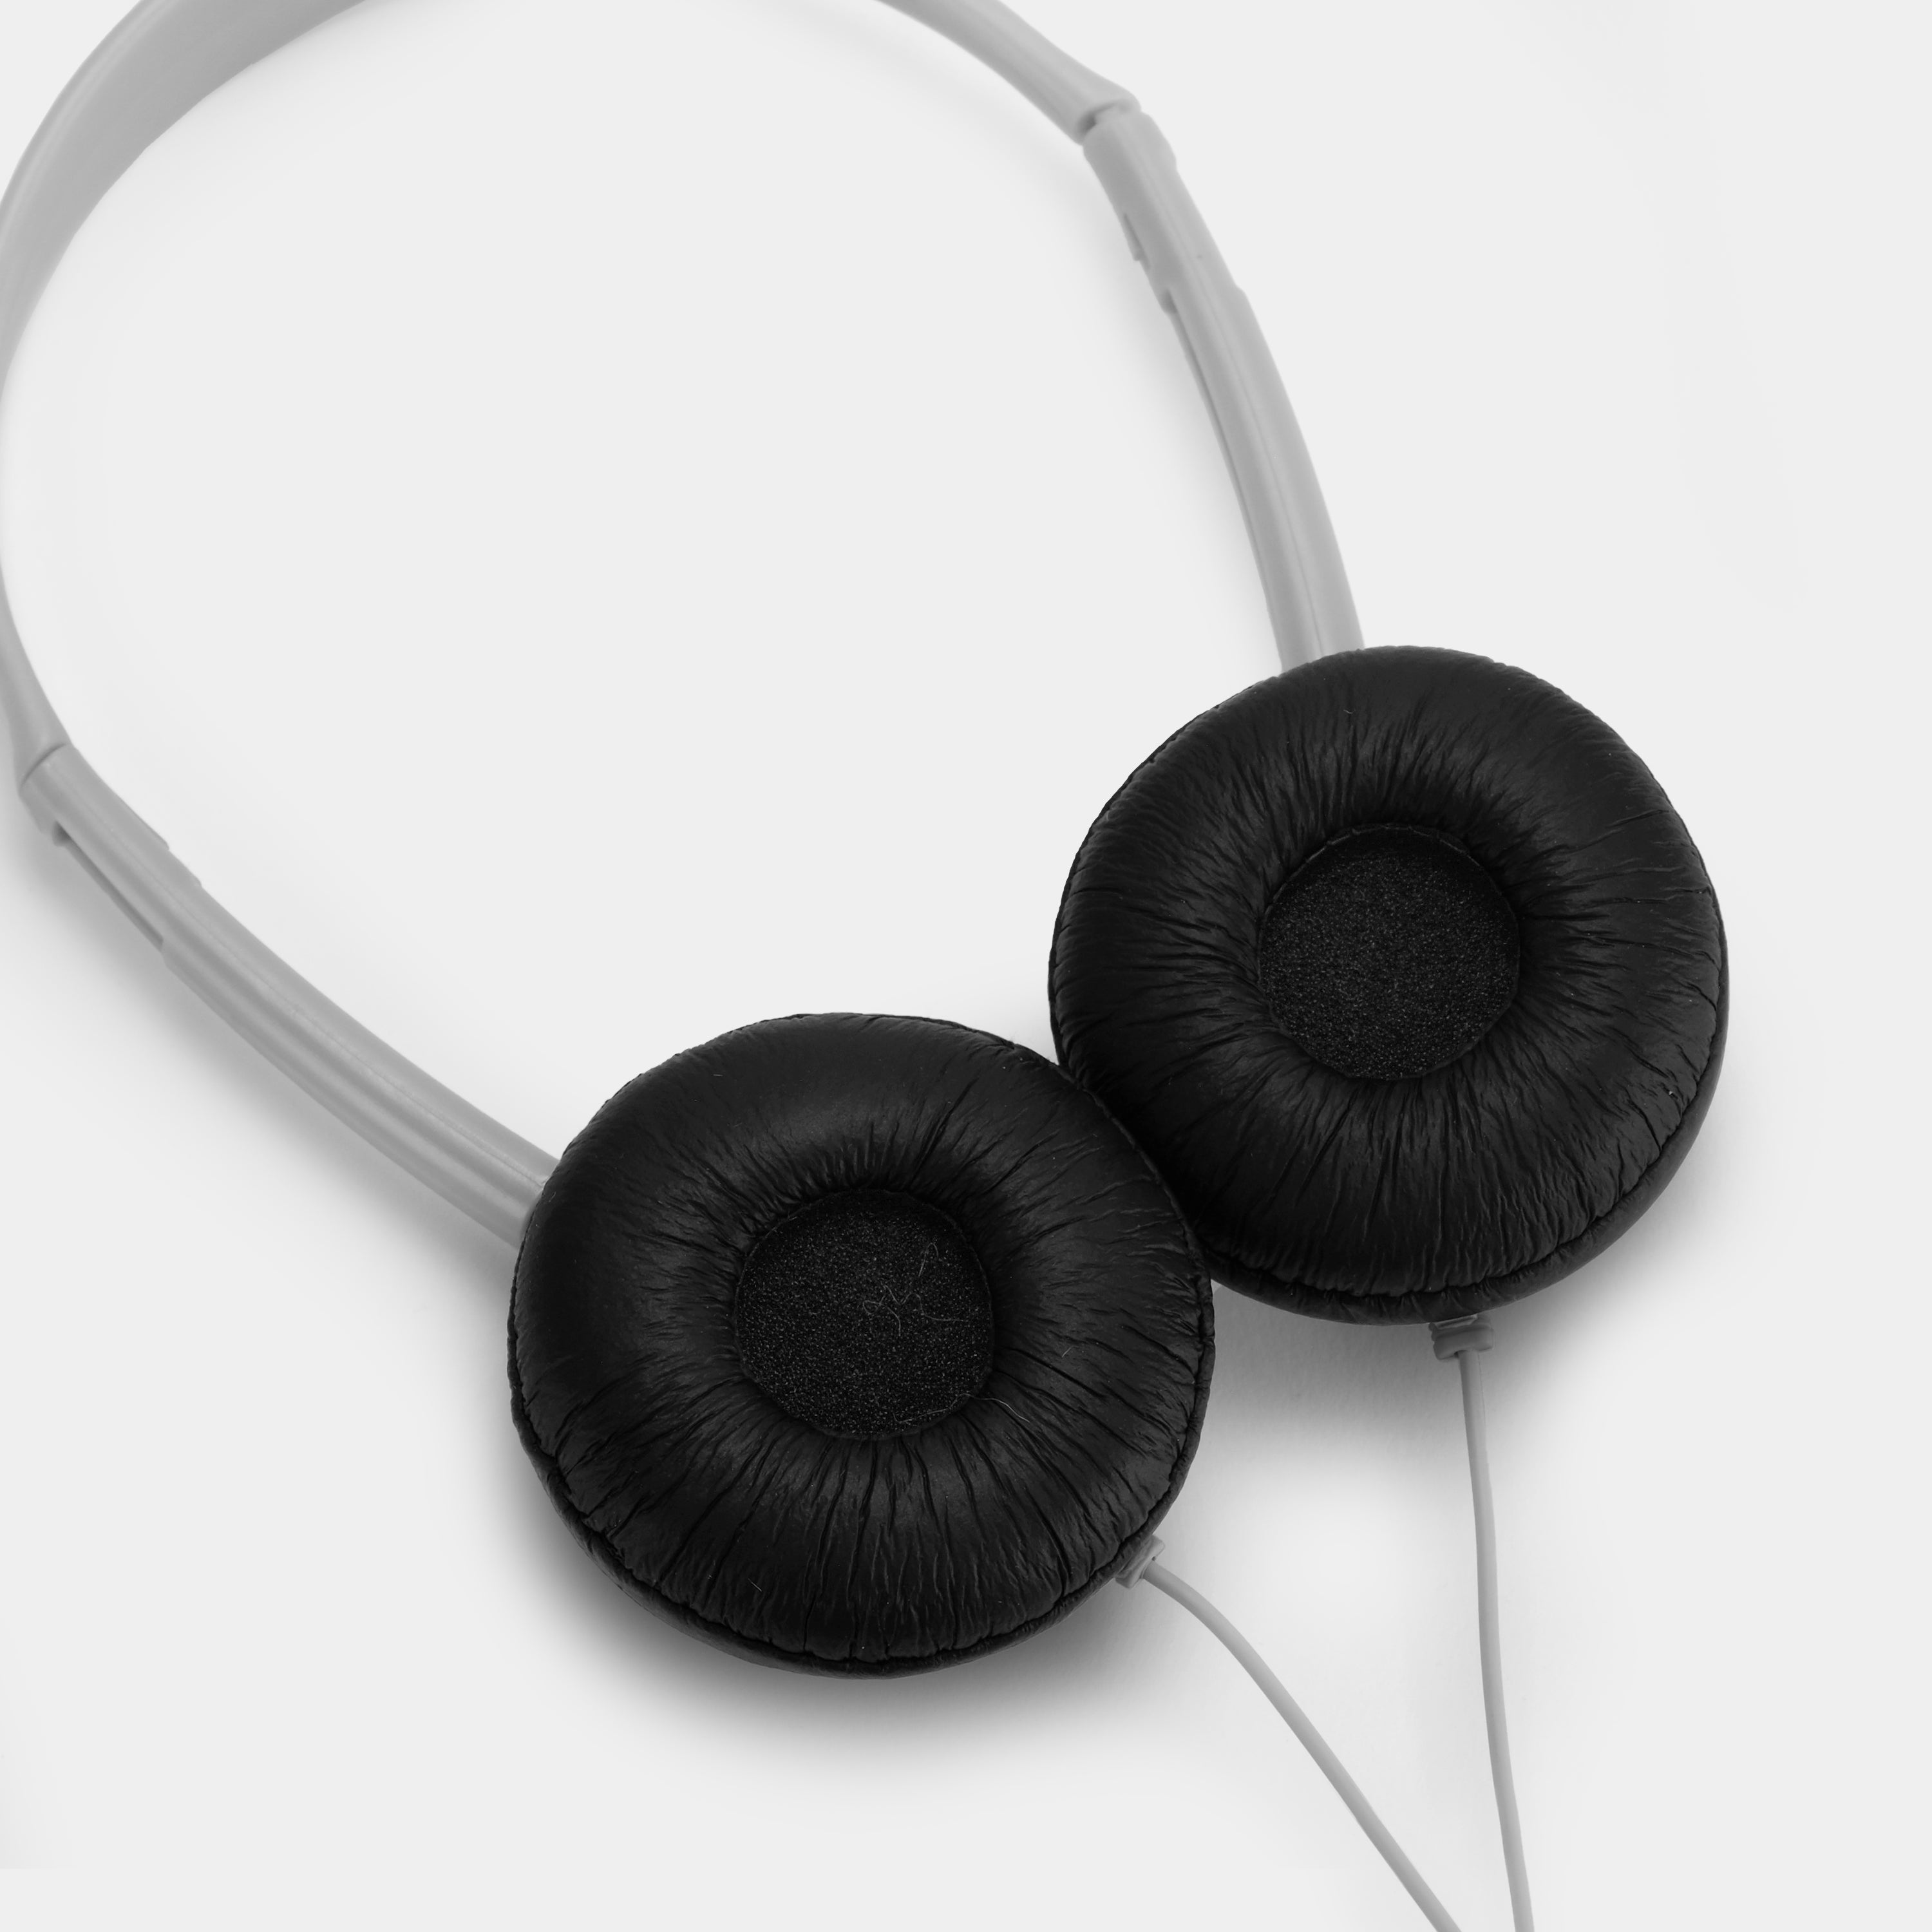 Virgin America Grey On-Ear Headphones